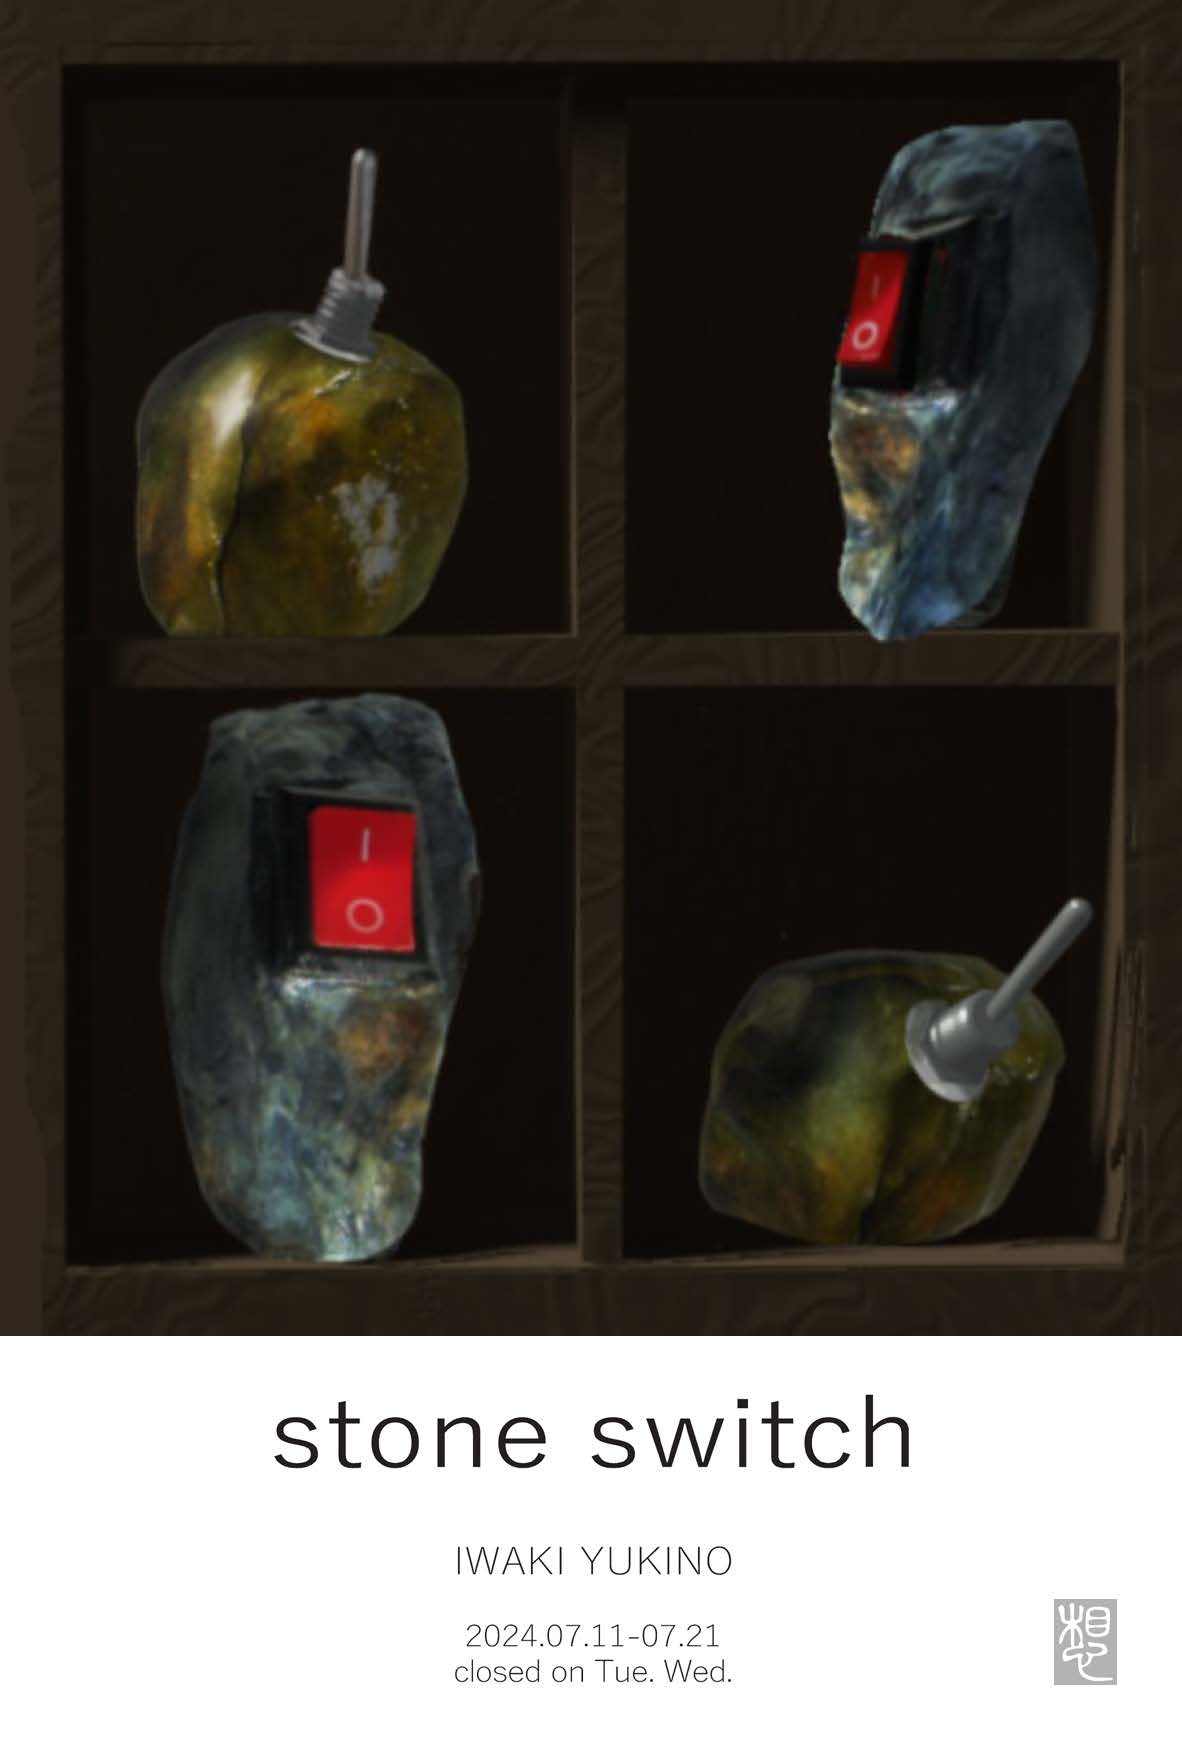 岩城 薫乃 【stone switch】ー 石スイッチ